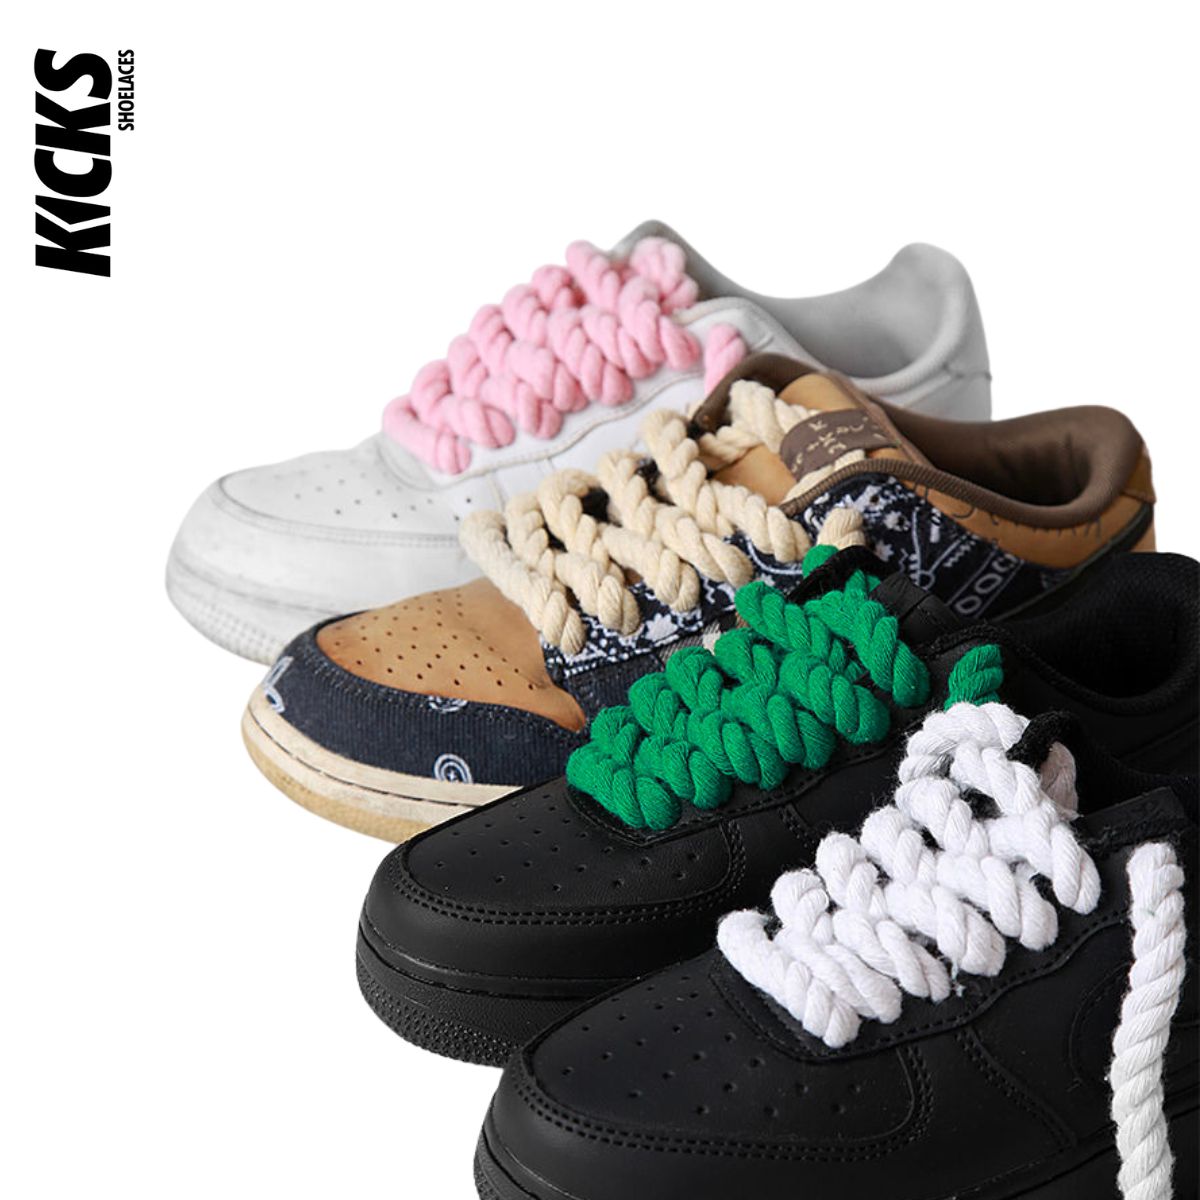 Round Fat laces - Kicks Shoelaces